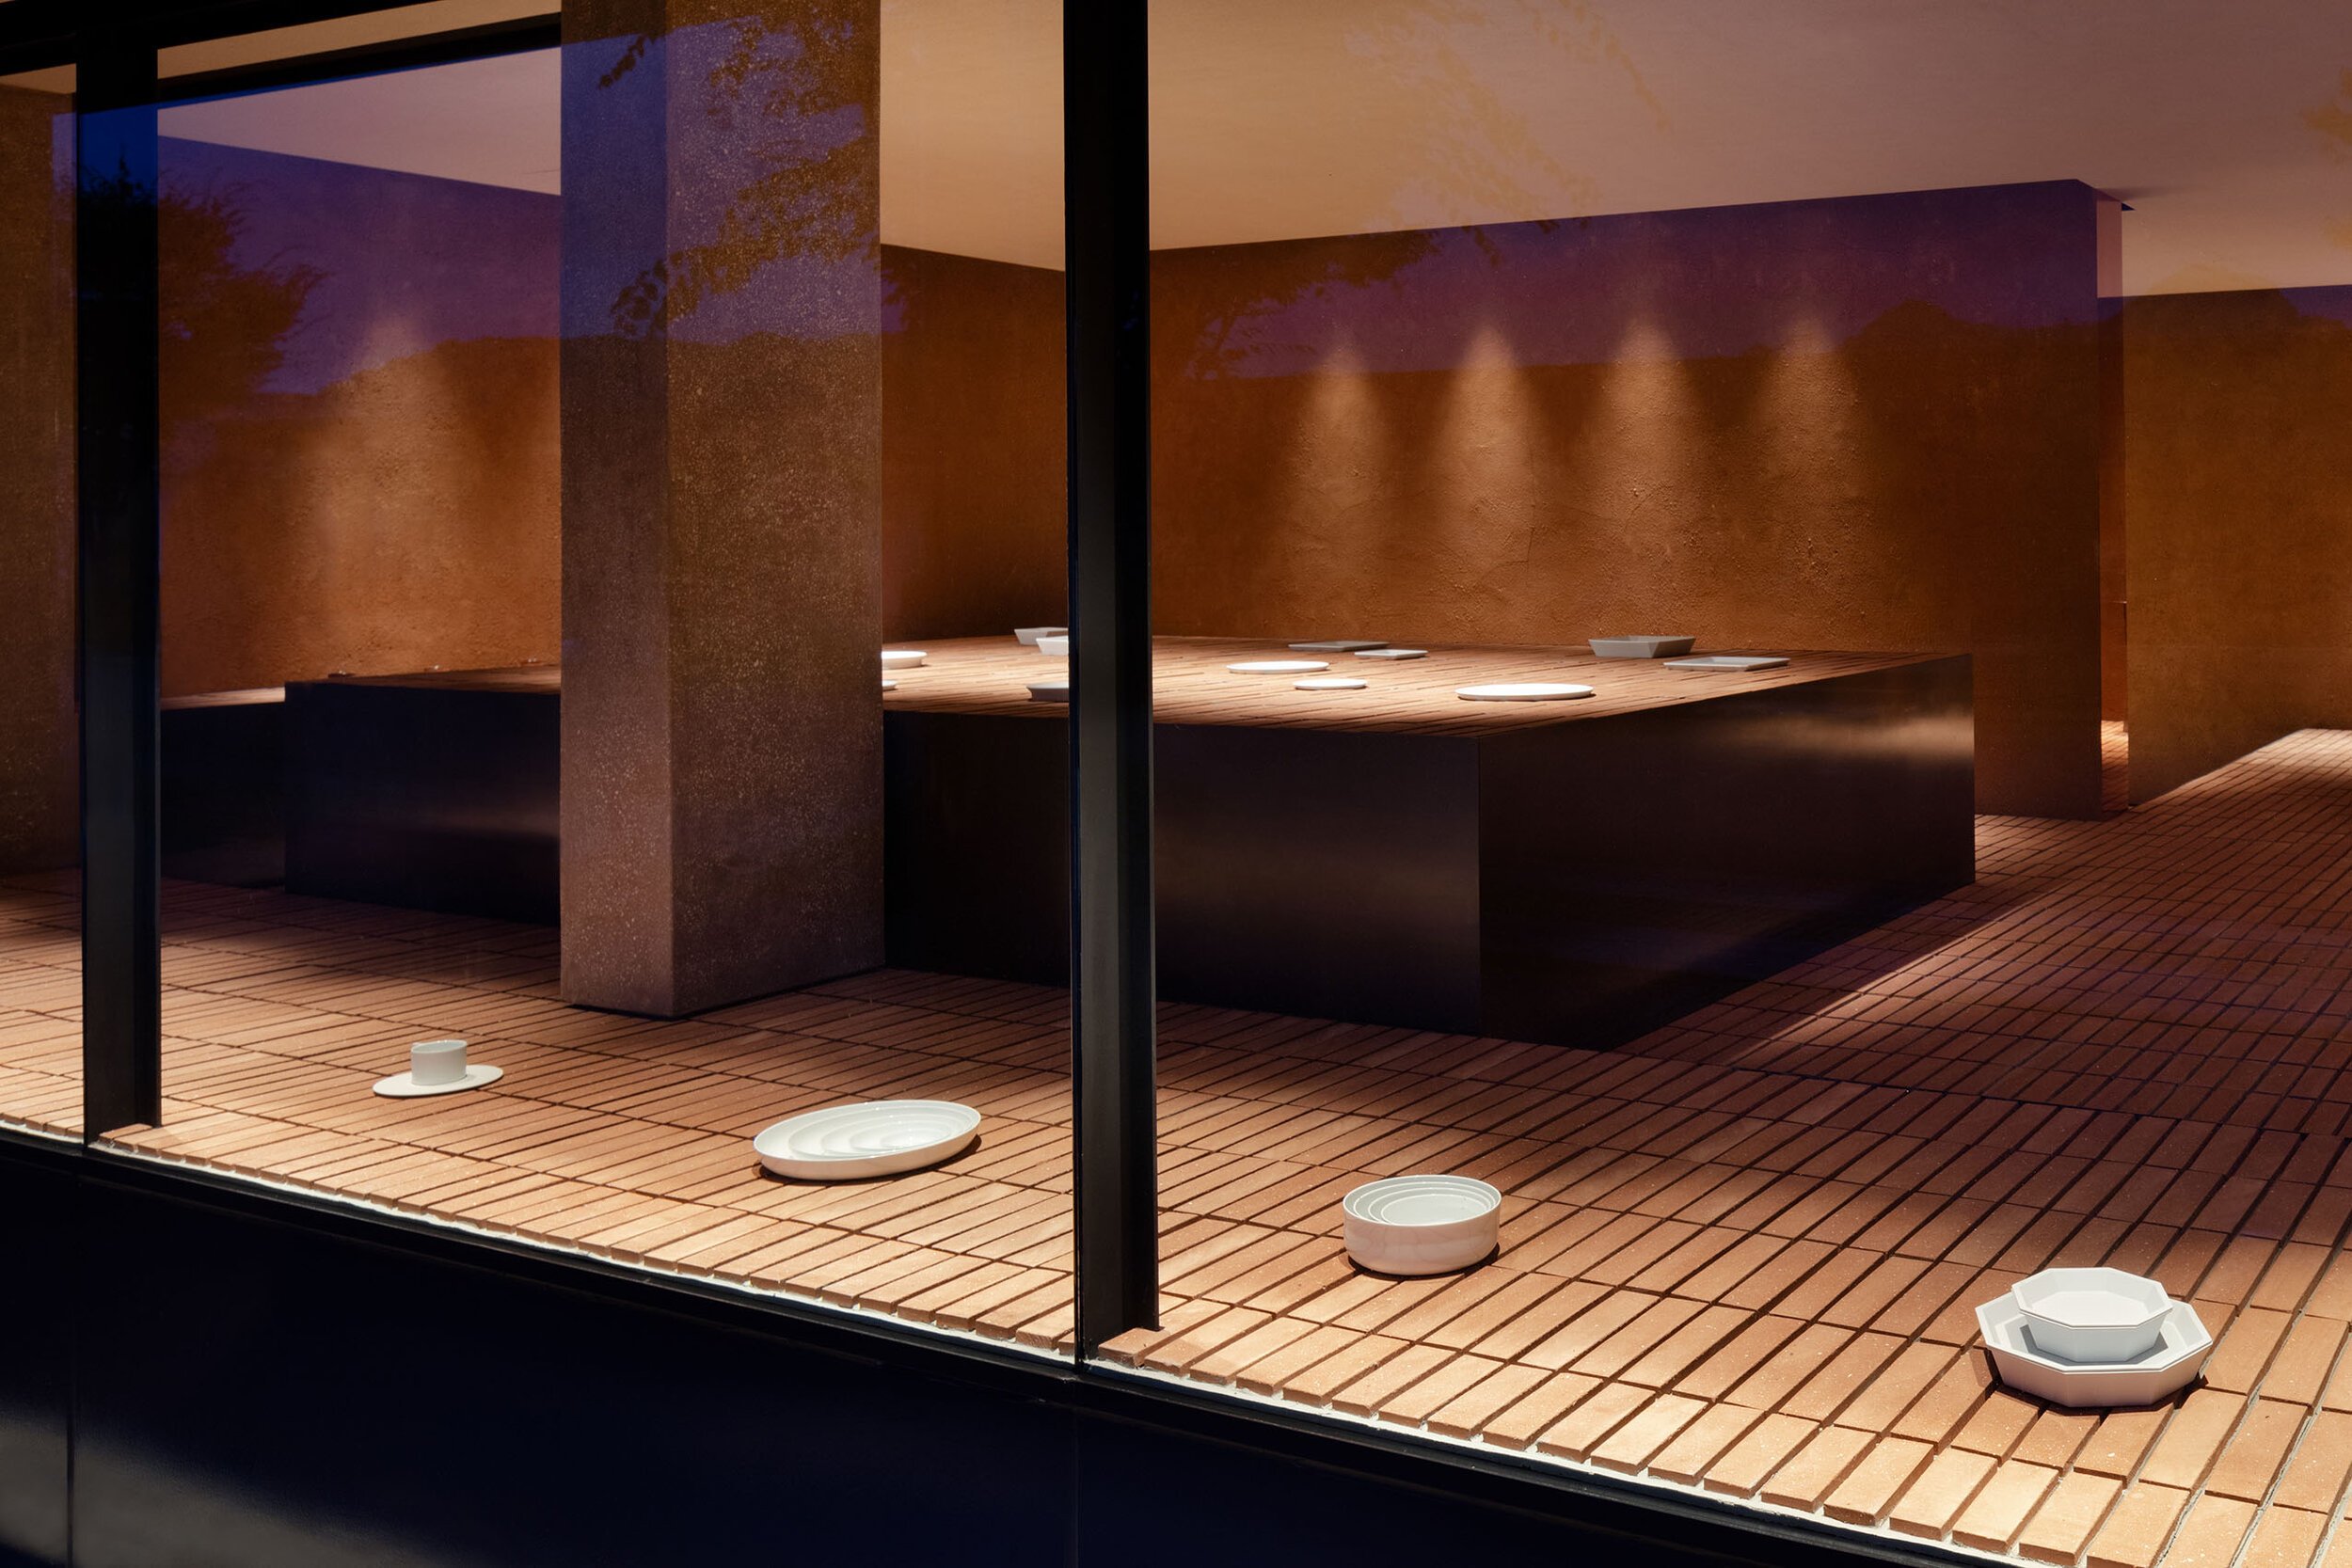  TERUHIRO YANAGIHARA STUDIOの柳原照弘がデザインした1616/arita japan 有田ショールームの外観 